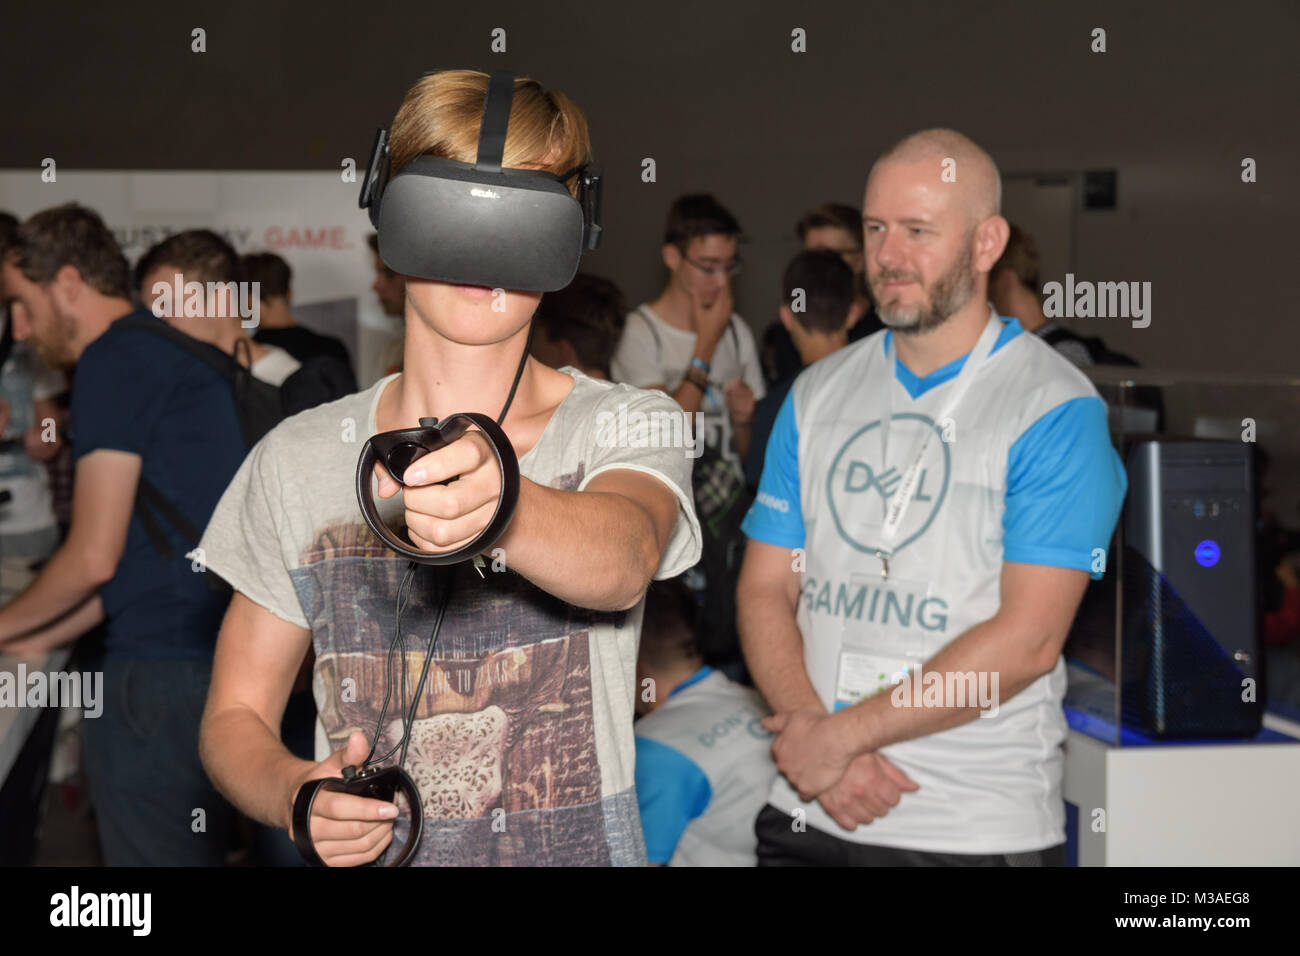 Colonia, Germania - 24 agosto 2017: un visitatore è la riproduzione di un gioco di realtà virtuale con occhio rift + touch al boot di Dell per i giochi in occasione di gamescom 2017. Foto Stock